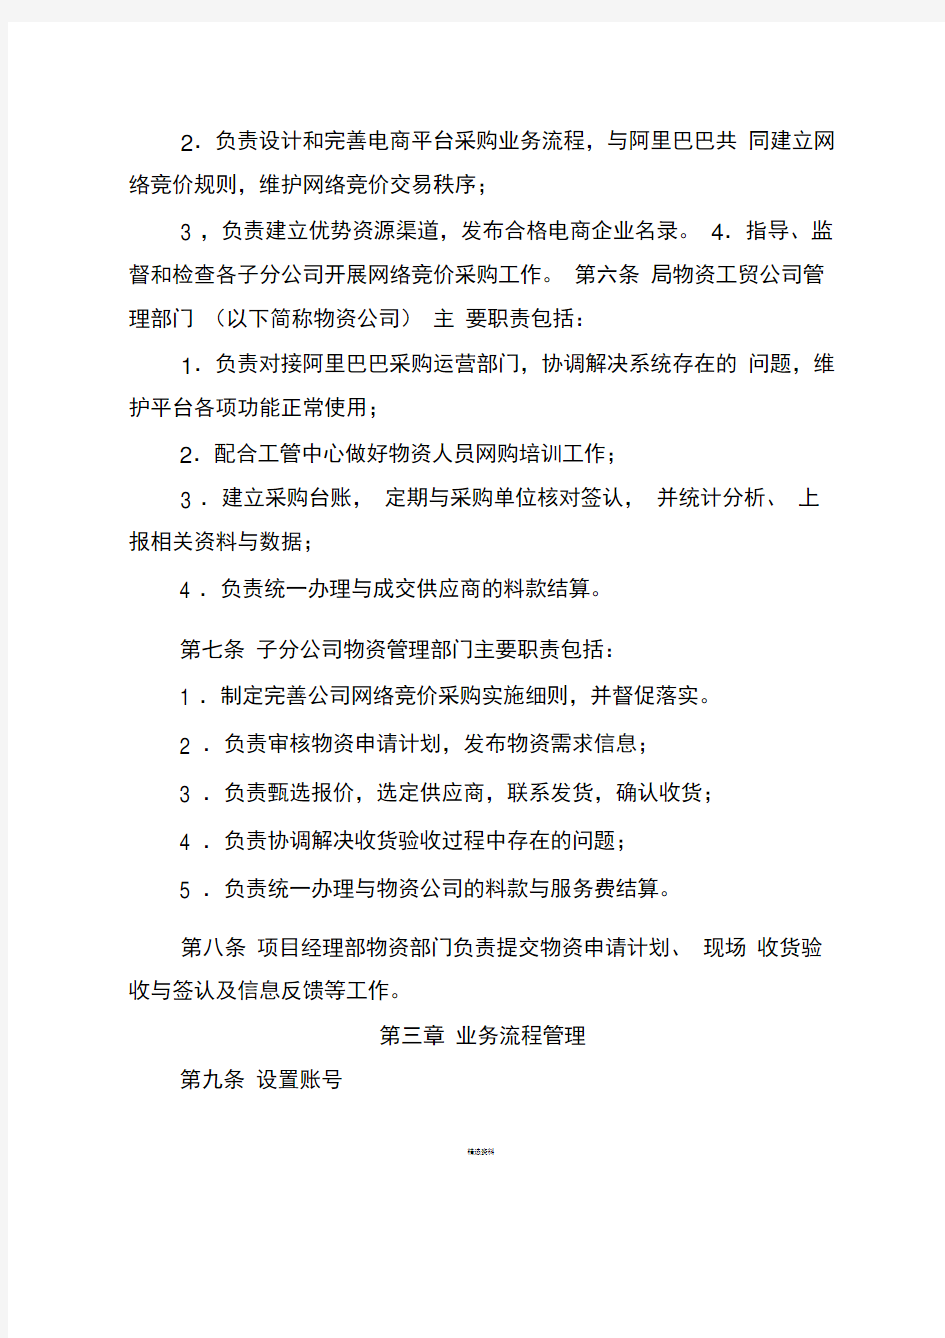 中铁四局集团工程项目常用物资网络竞价采购管理办法